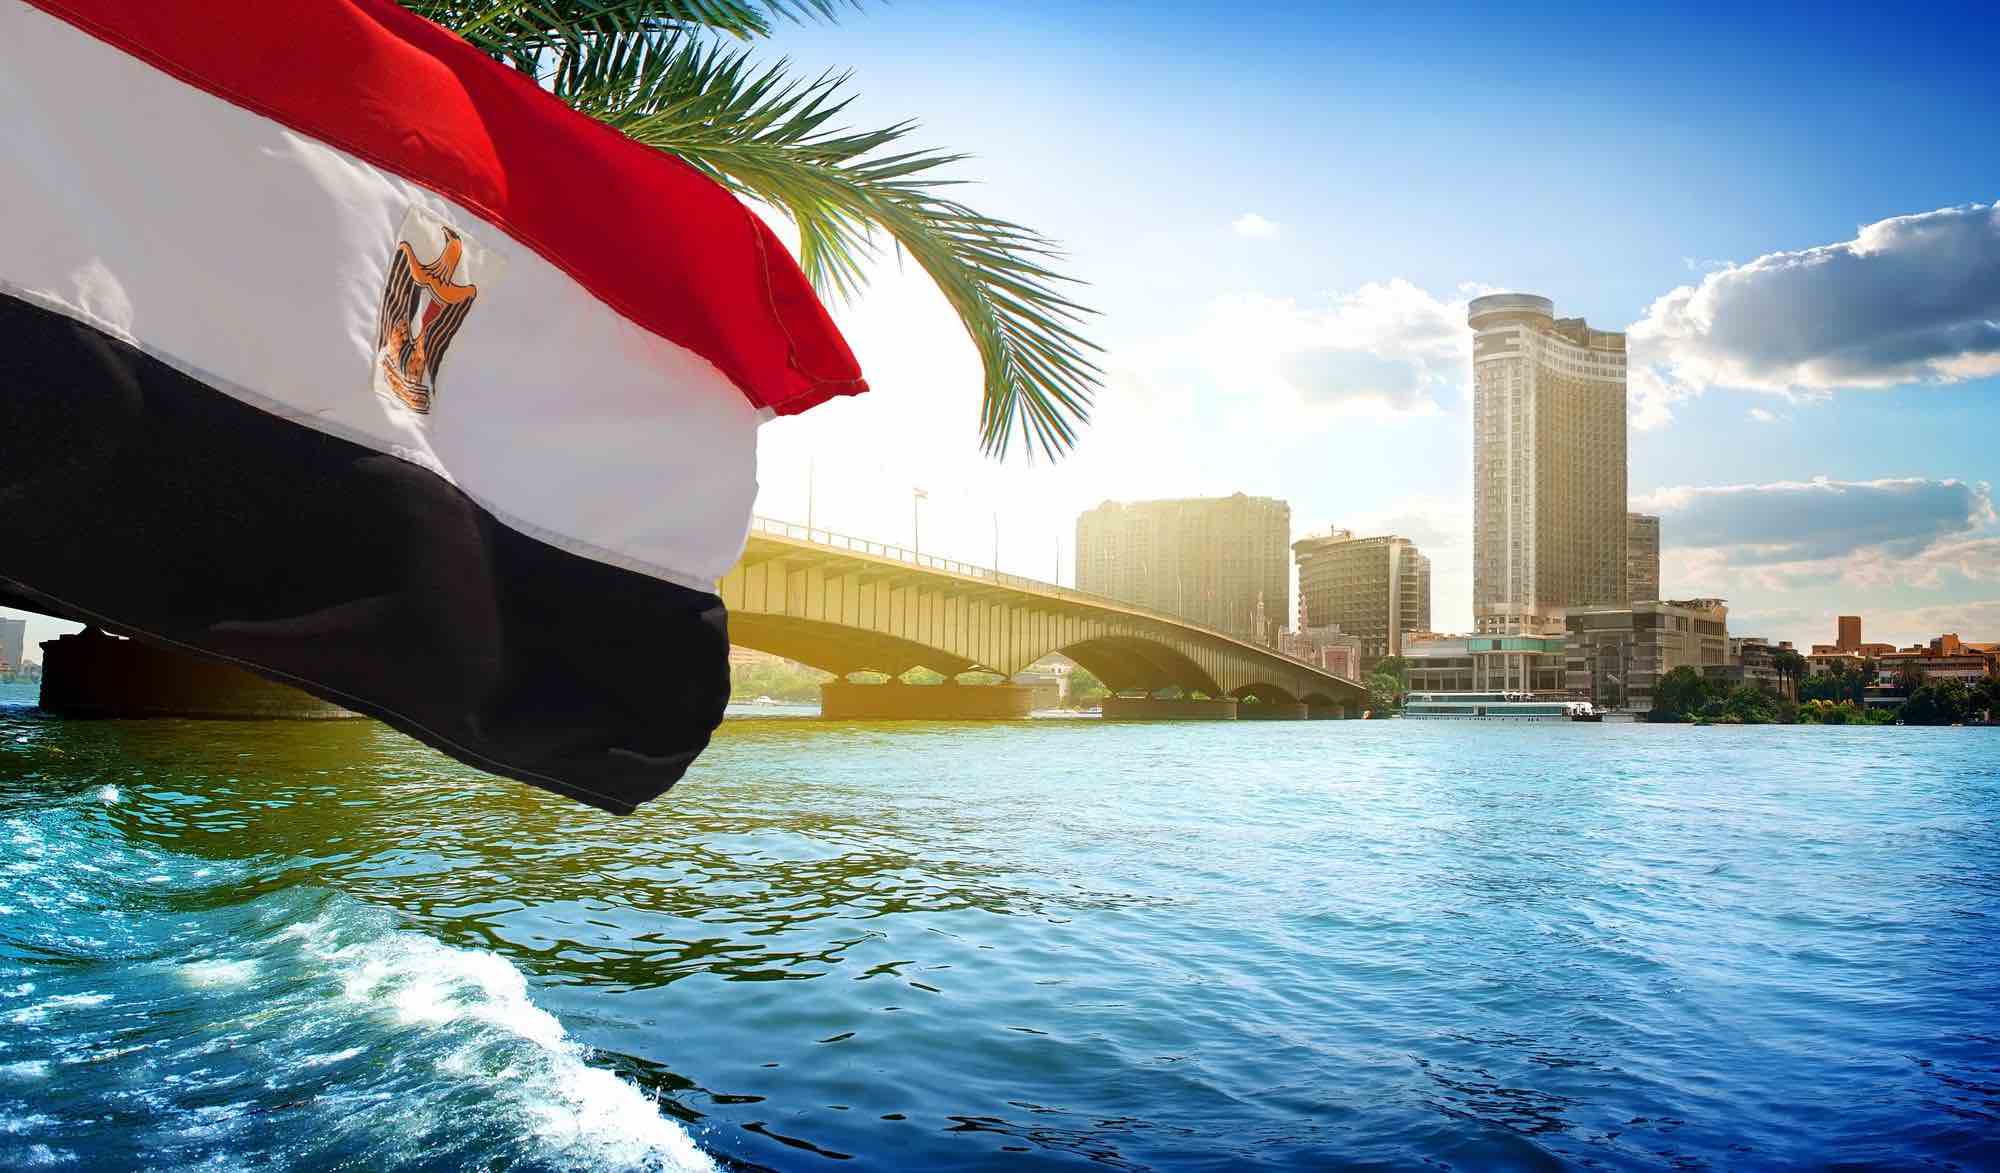 مسؤول أوزبكي يشيد بتجربة مصر في تحسين الحياة: فرصة للتعلم والاستفادة